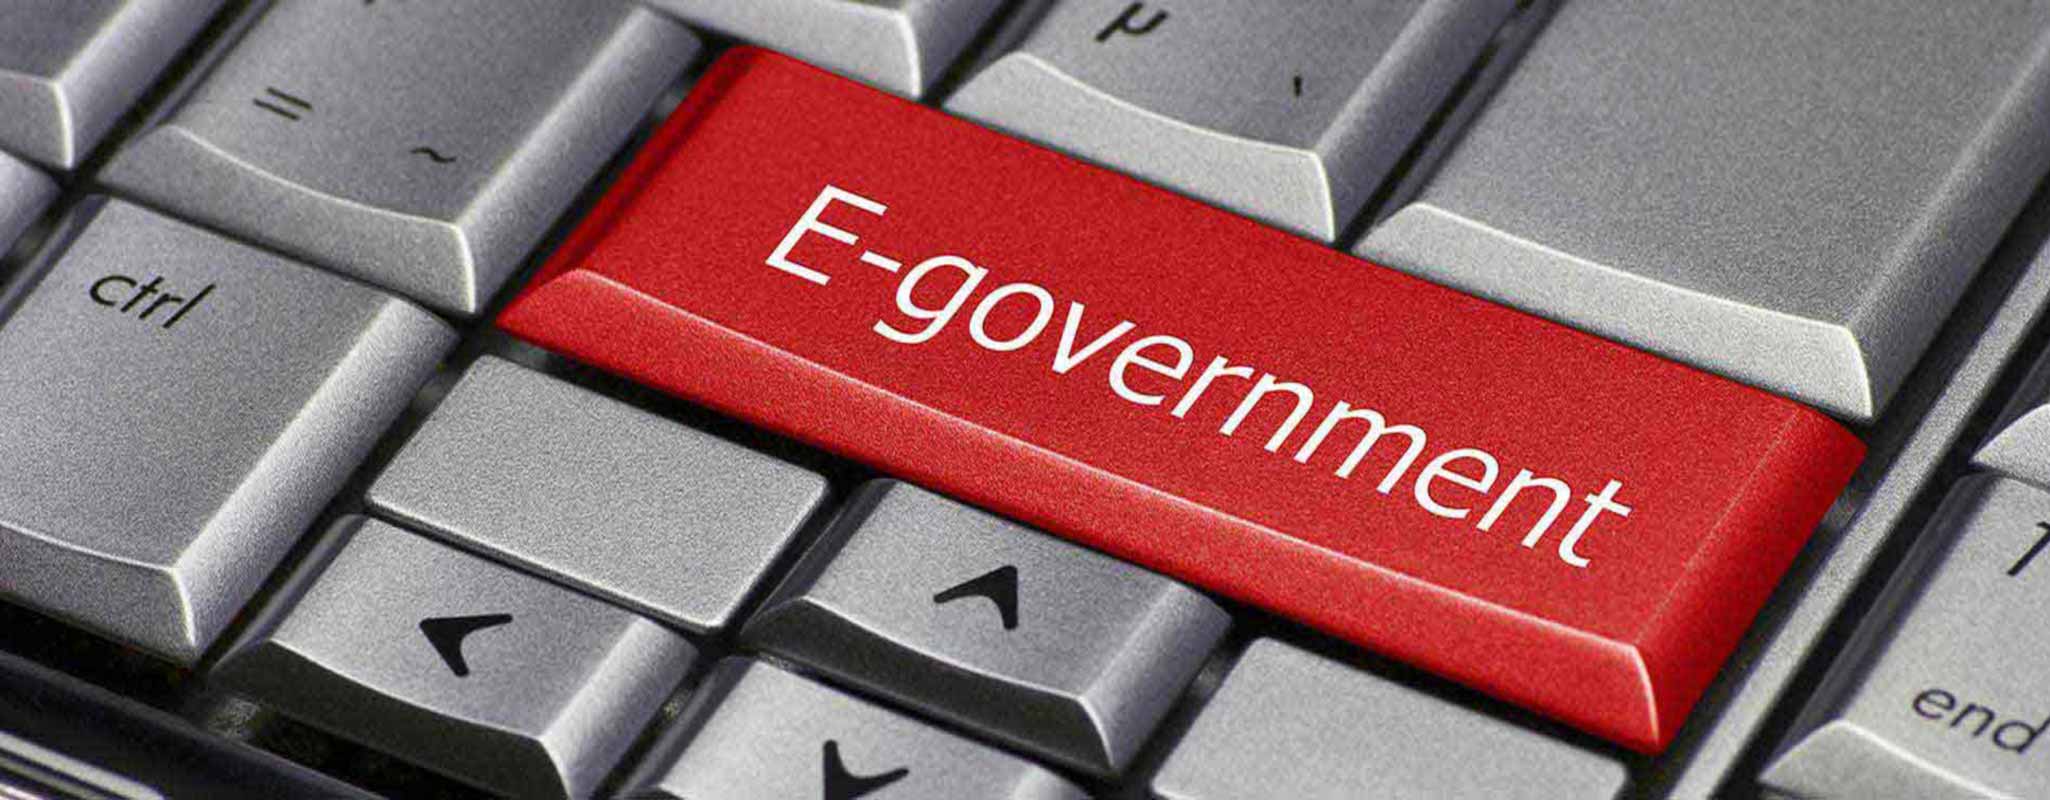 e-govrnment services